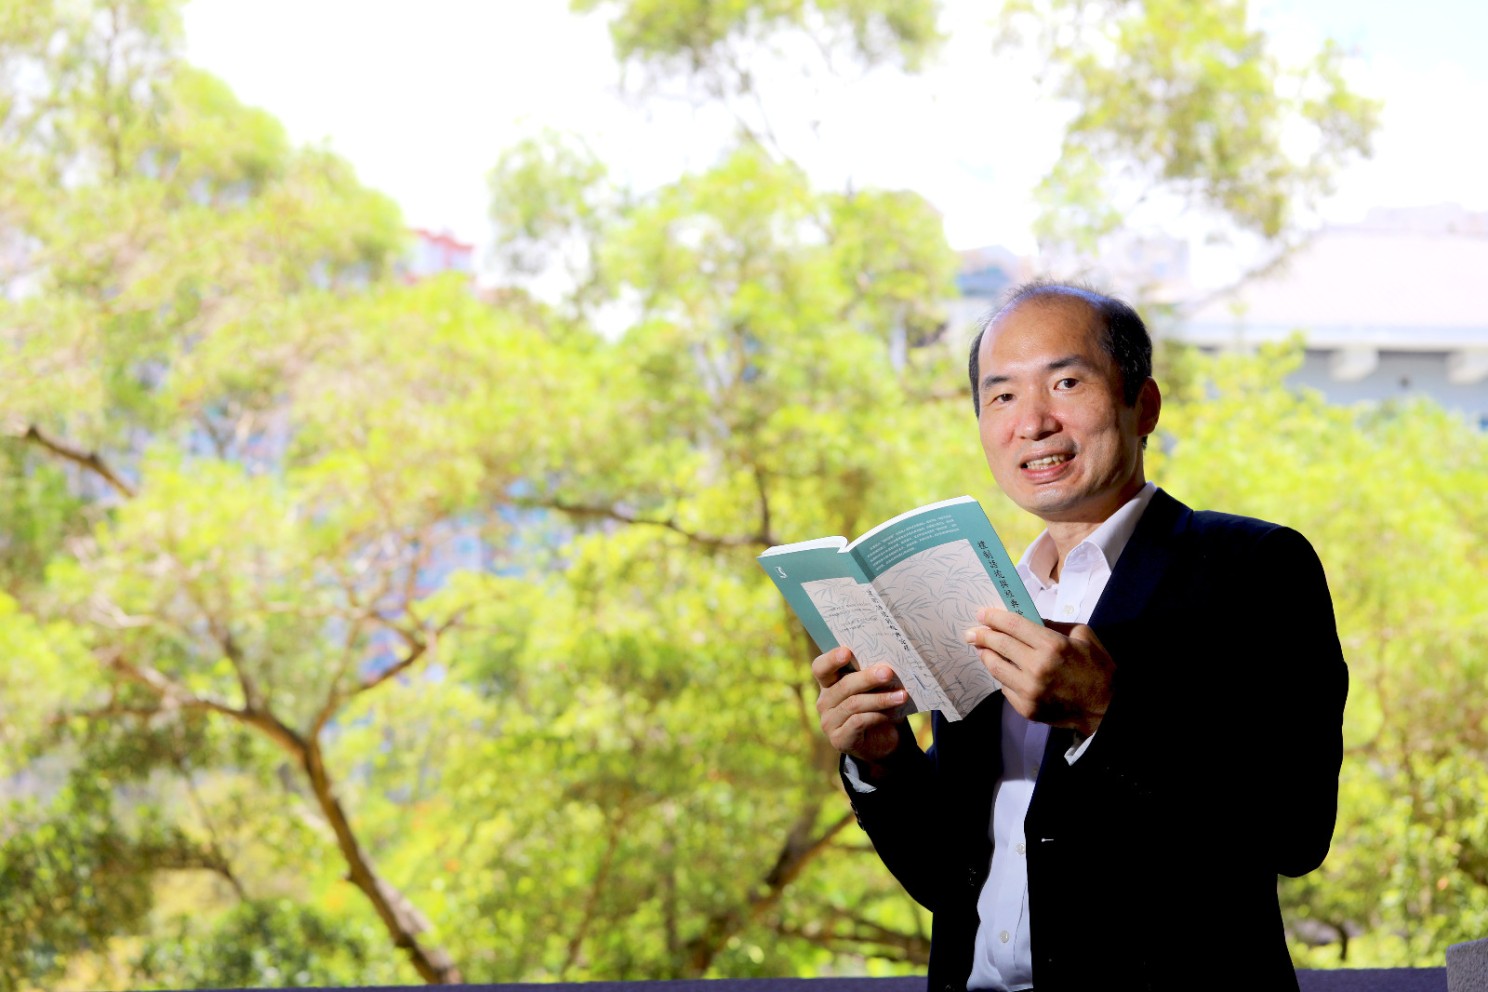 嶺大中文系教授許子濱教授及其獲獎著作《禮制語境與經典詮釋》。